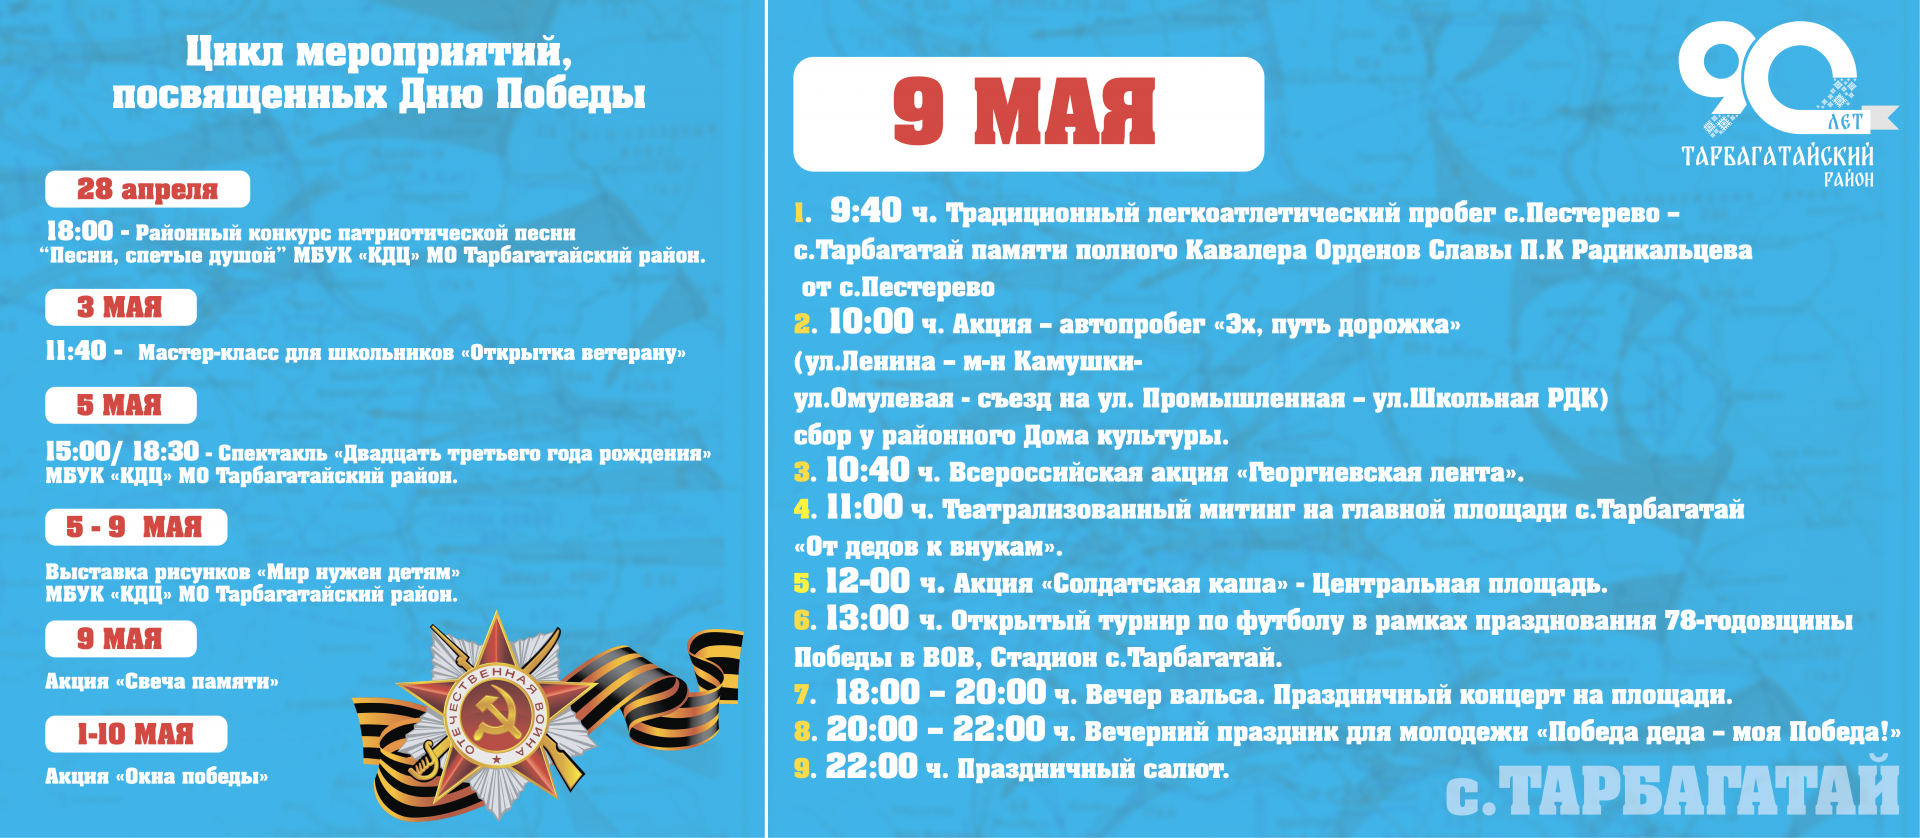 Программа на 9 мая. Празднование 9 мая. Празднование дня Победы. Программа празднования дня Победы в Барнауле 2023г. 9 мая 2023г